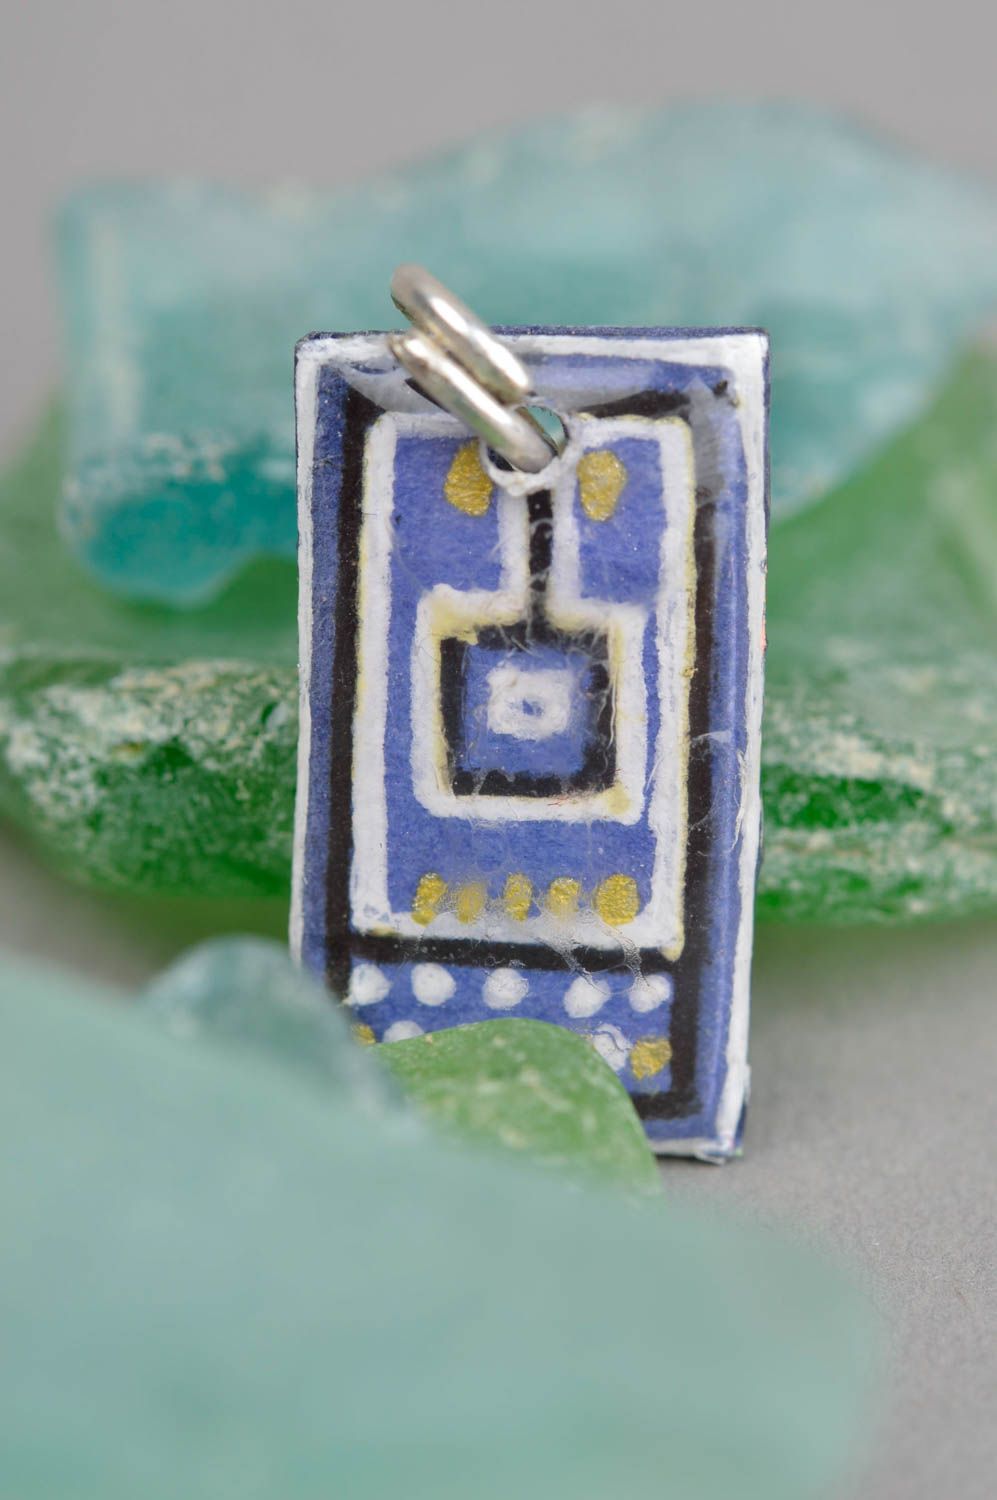 Beautiful jewellry handmade epoxy pendant fashion tips for girls small gifts photo 1